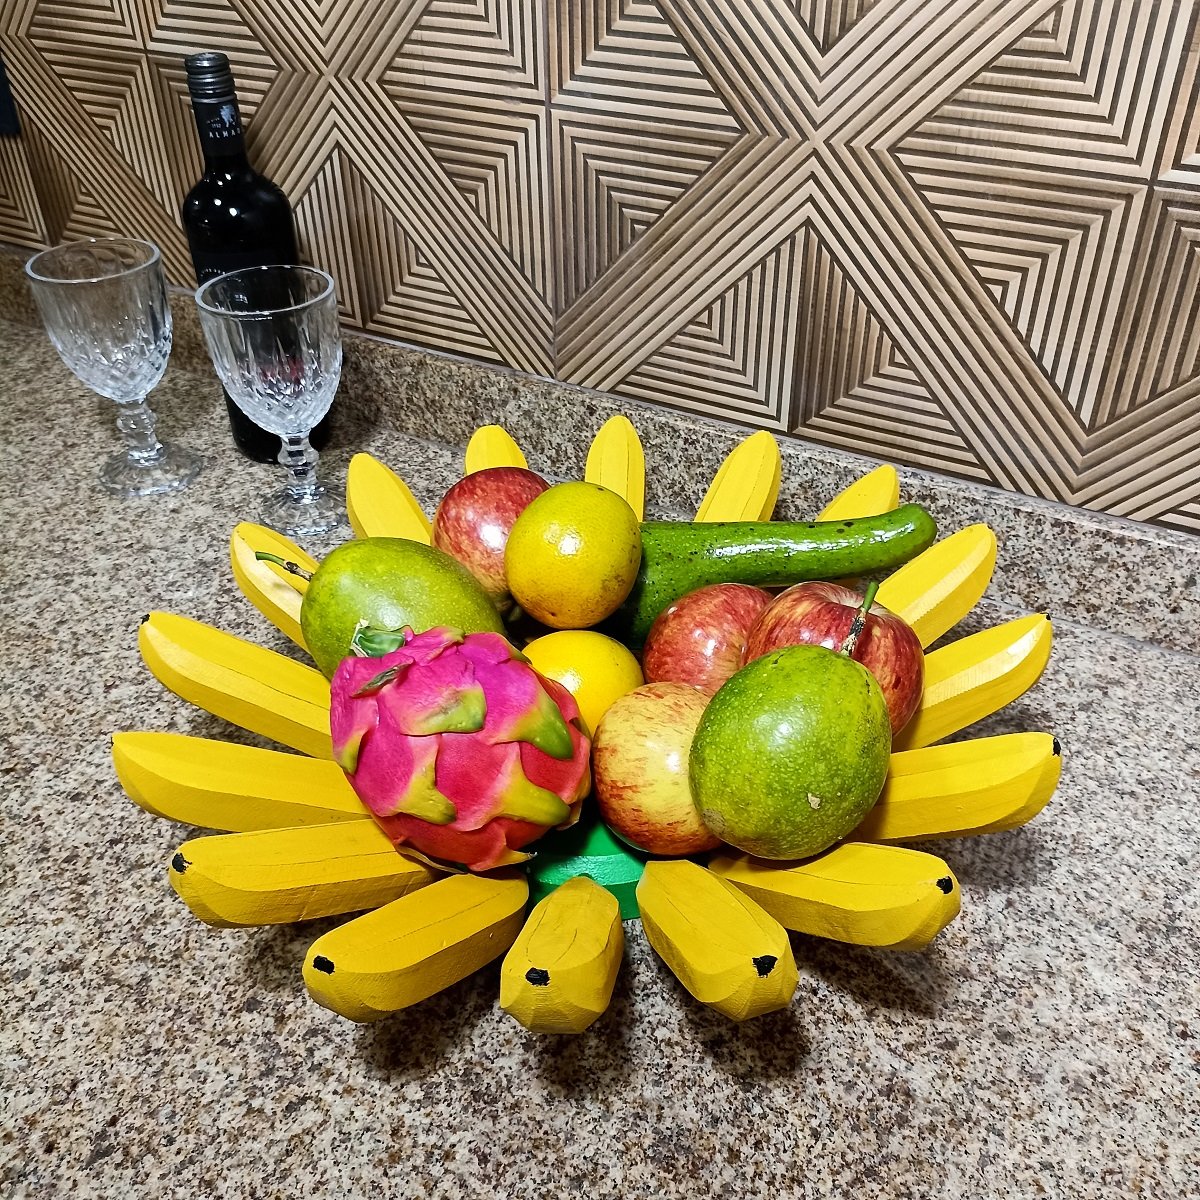 Fruteira Fruta de Mesa em Formato de Banana Artesanato Rústico Feito de Madeira super resistente ide - 3